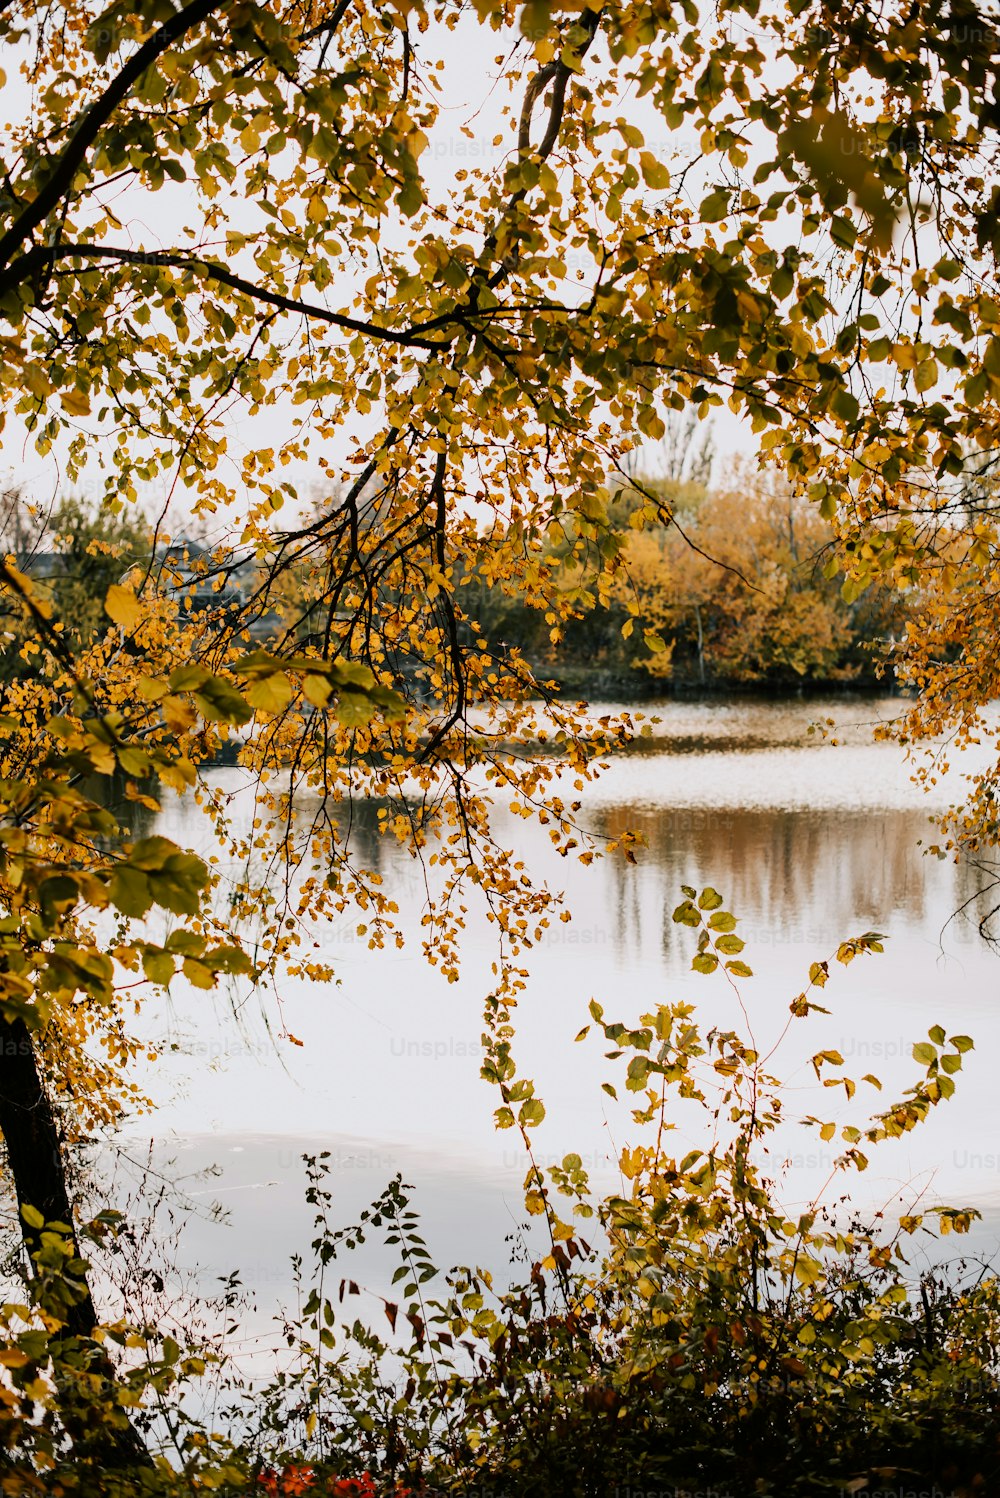 黄色い葉を持つ木々に囲まれた湖